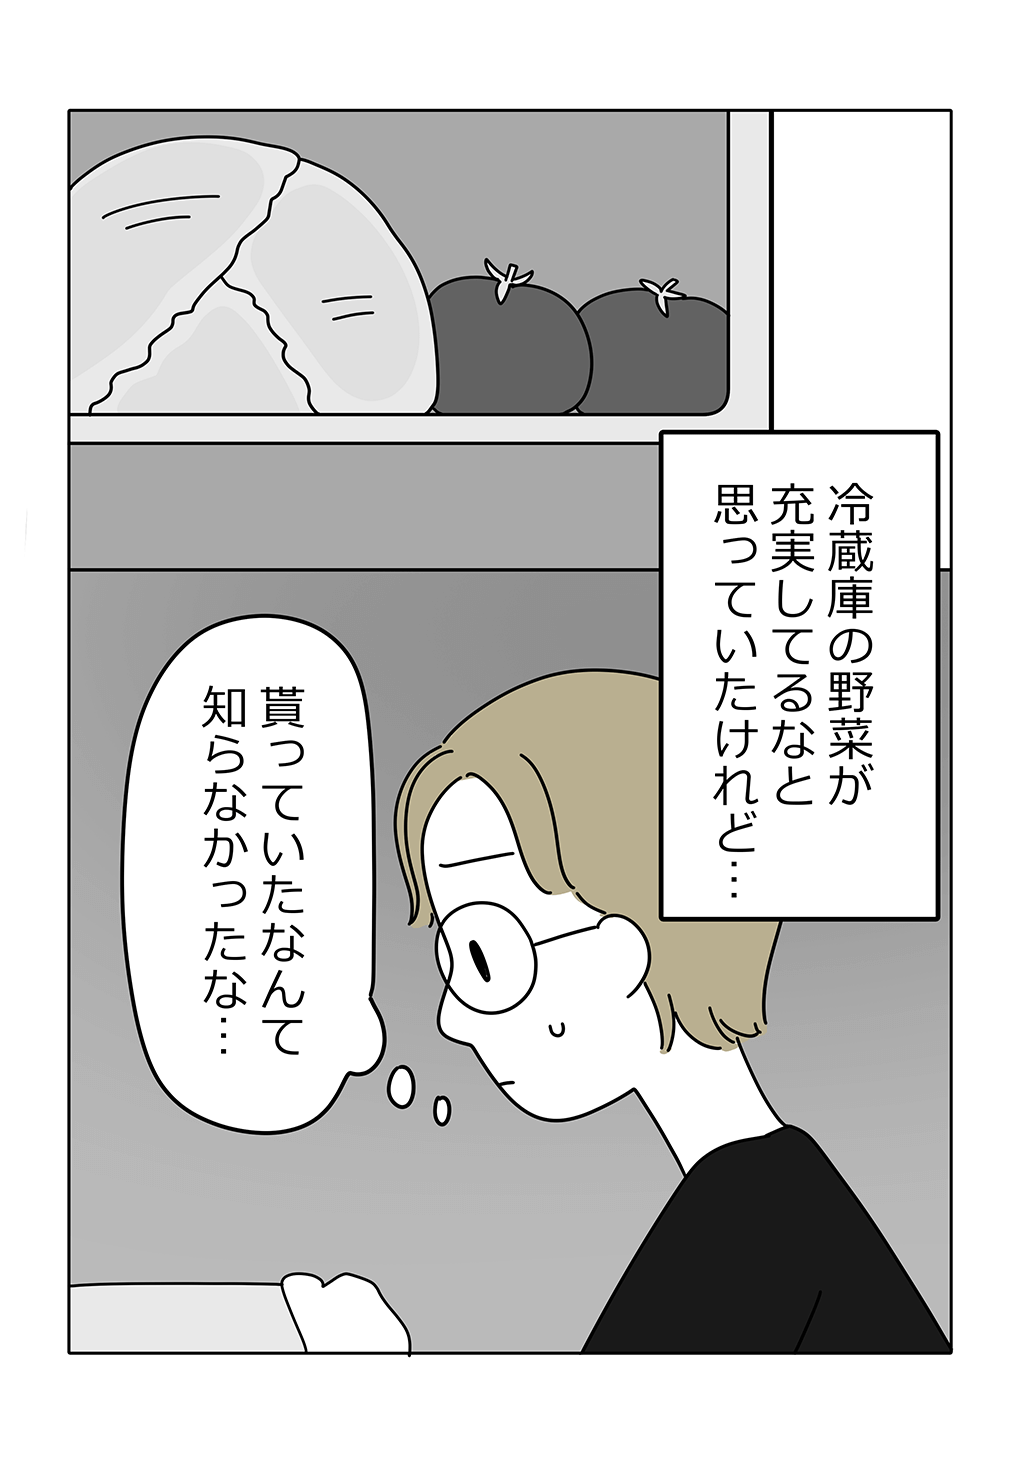 漫画13